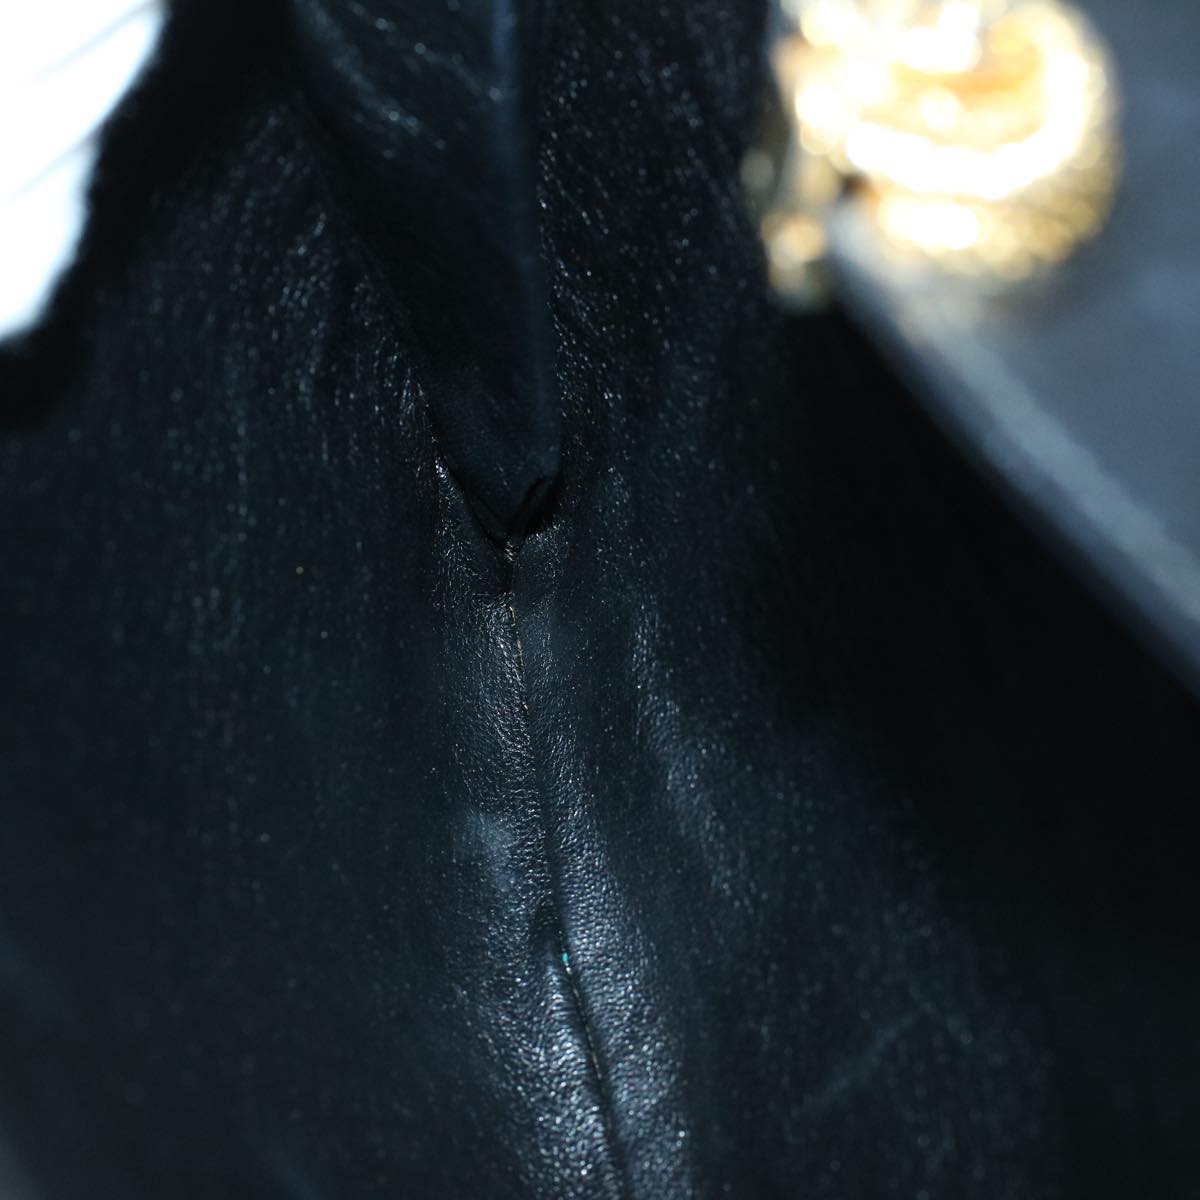 BALLY Shoulder Bag Leather Black Auth 60178